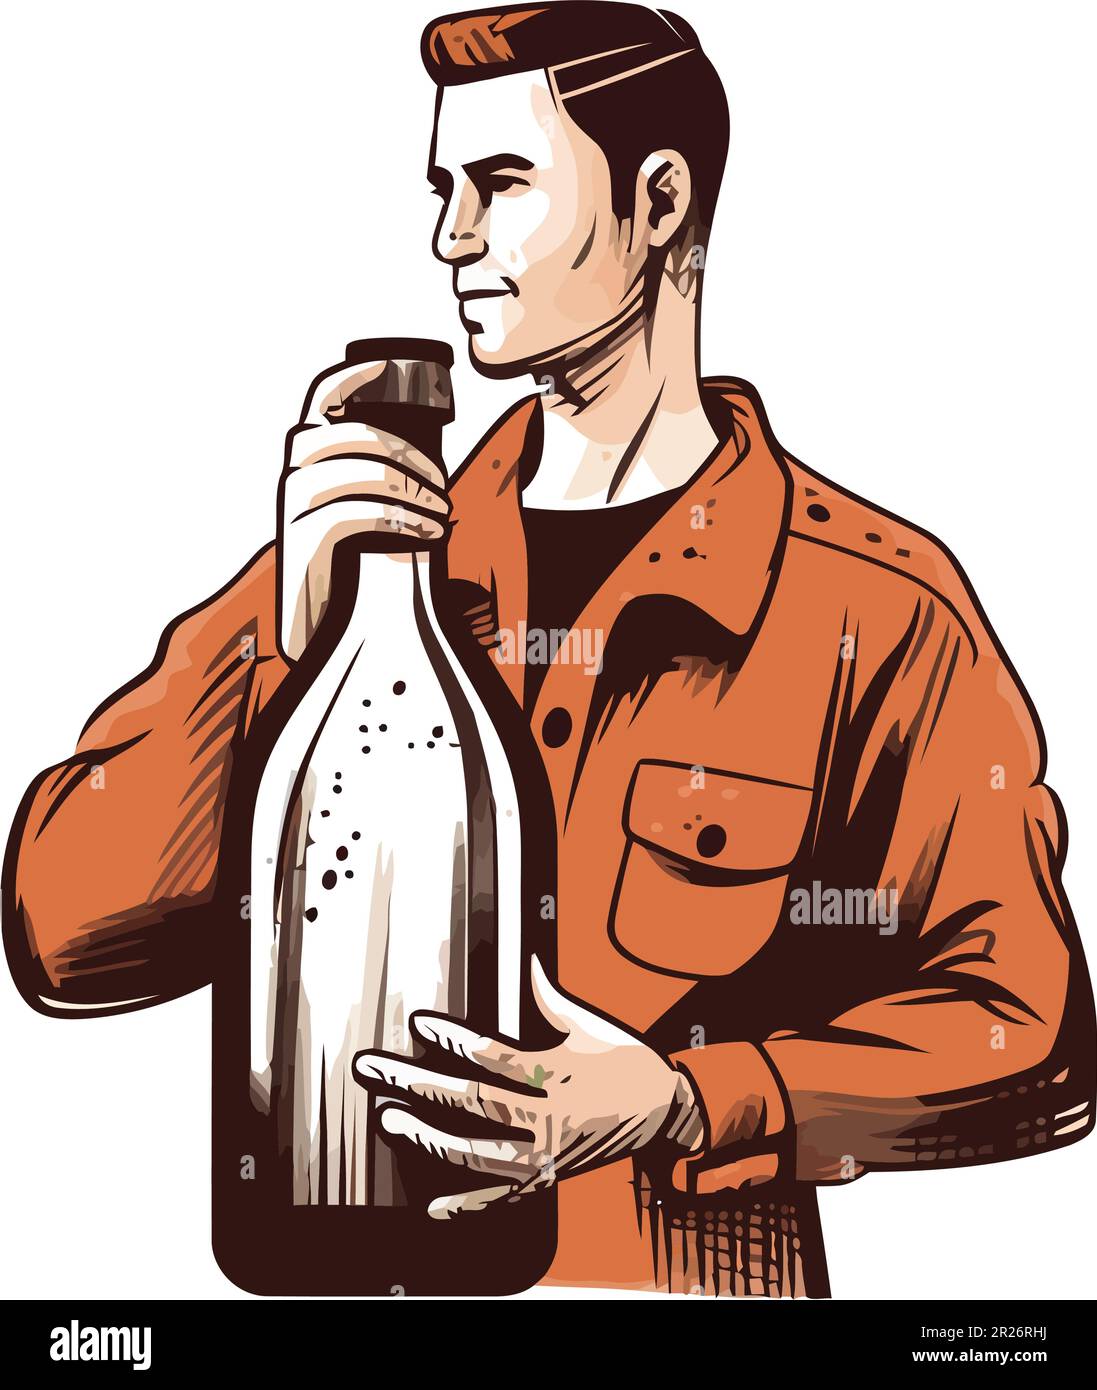 Cartoon orange drinking beer helmet with bottles Vector Image